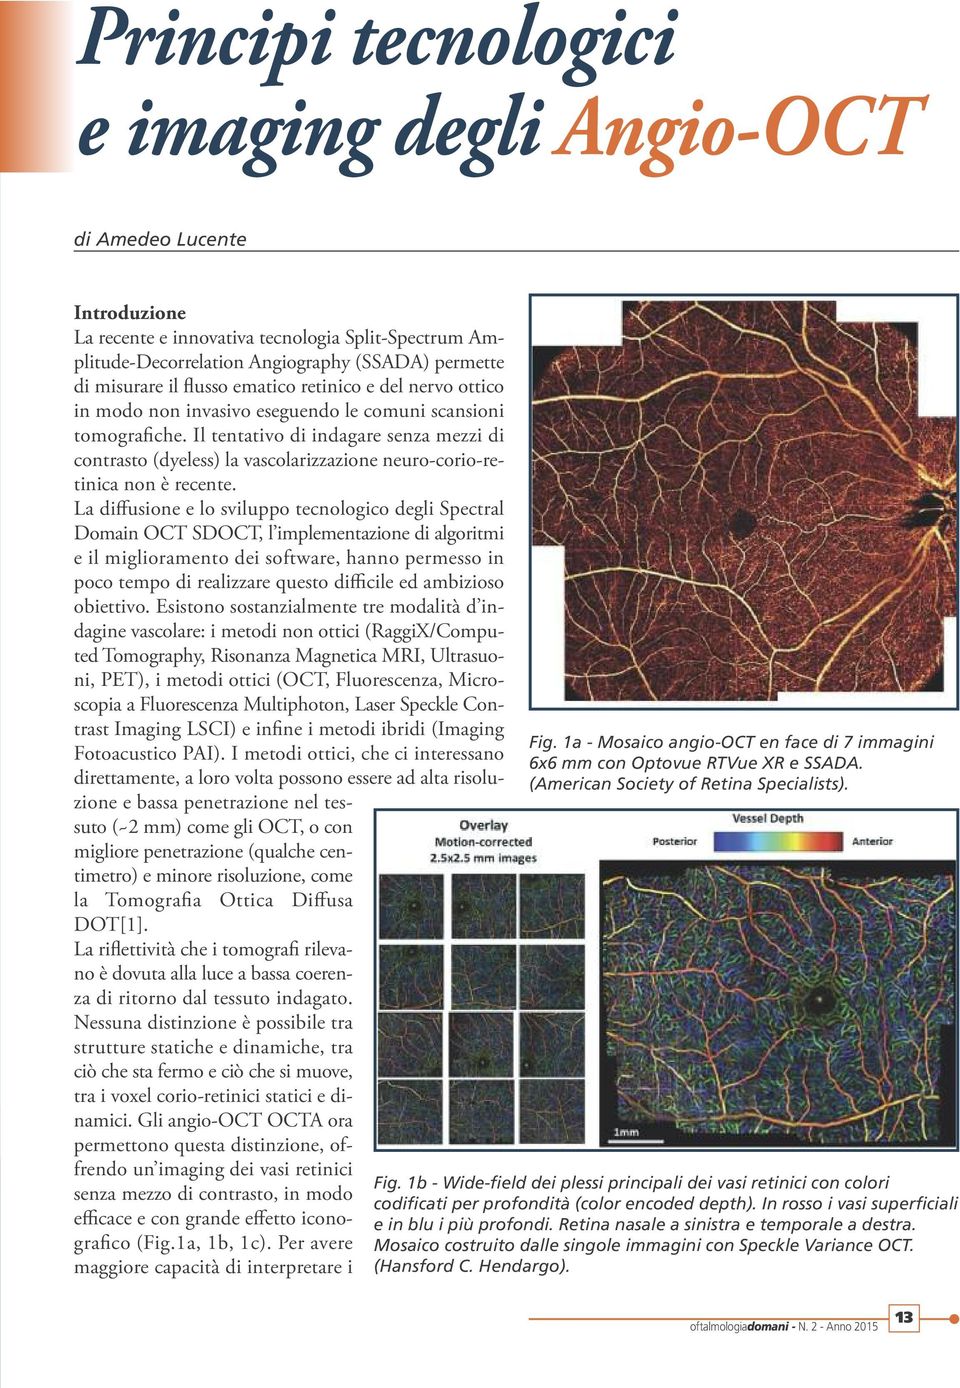 Il tentativo di indagare senza mezzi di contrasto (dyeless) la vascolarizzazione neuro-corio-retinica non è recente.